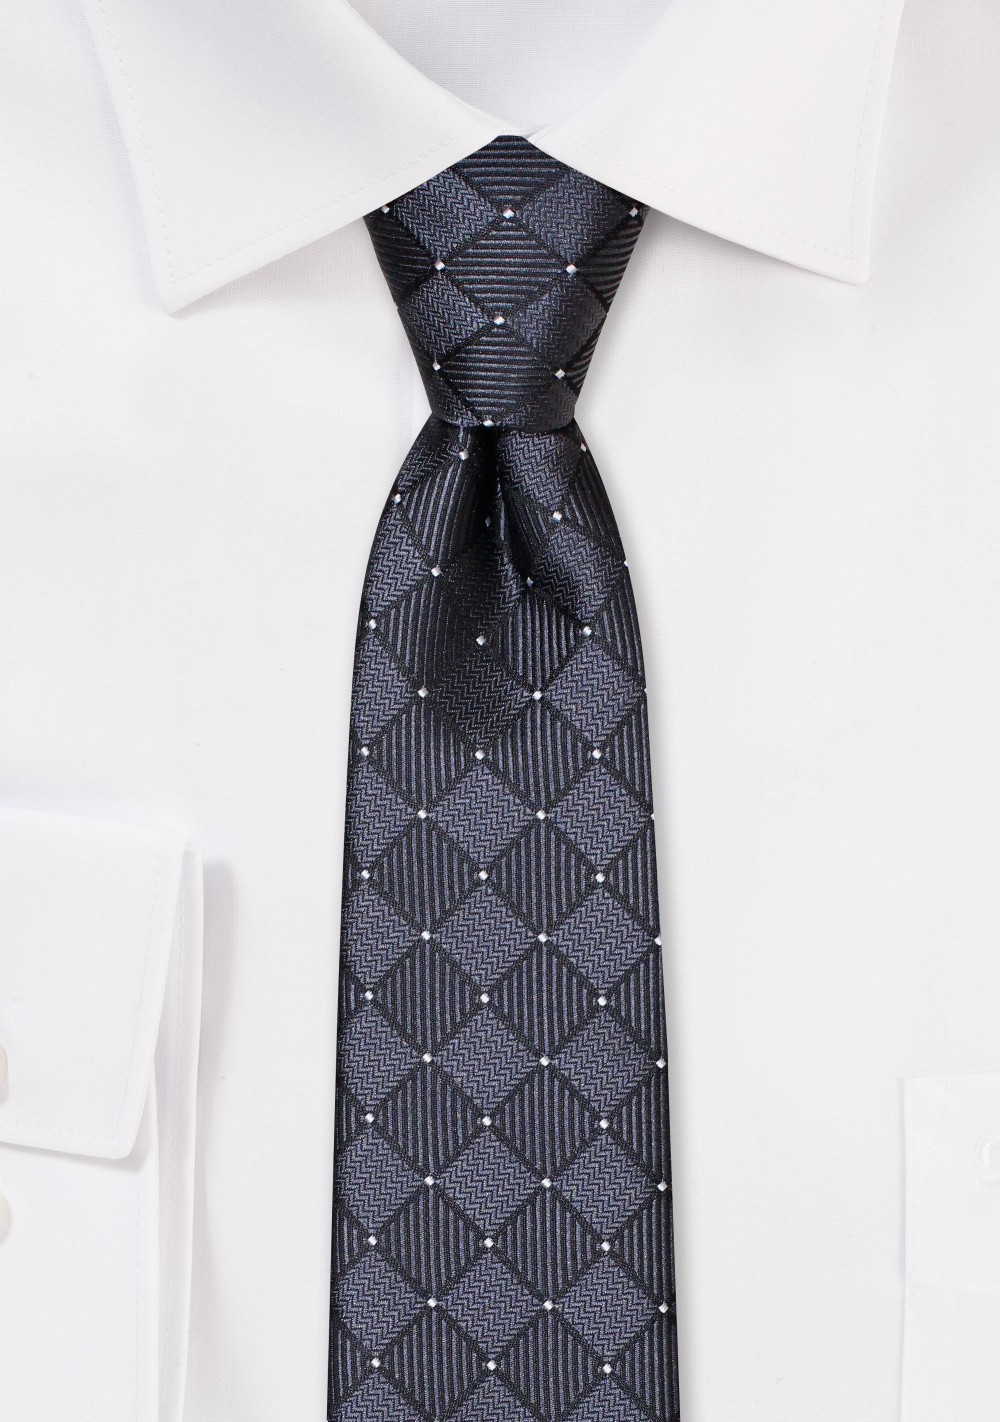 Black Skinny Tie with Checks